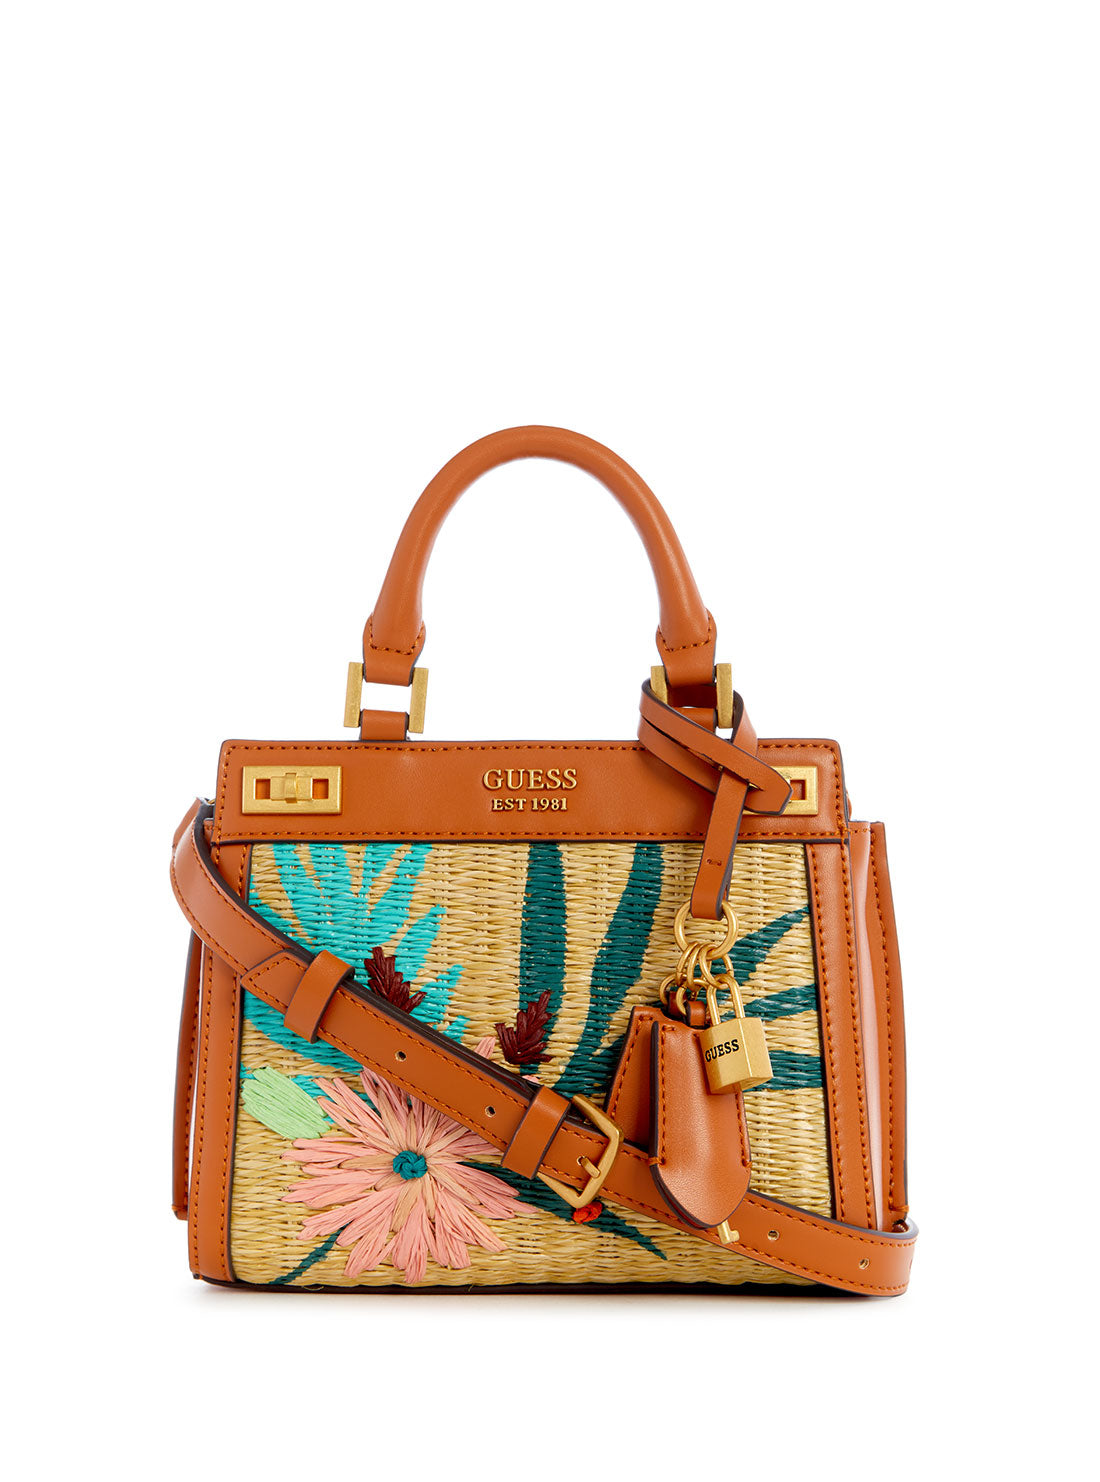 GUESS Women's Cognac Floral Katey Mini Satchel Bag WA787073 Front View